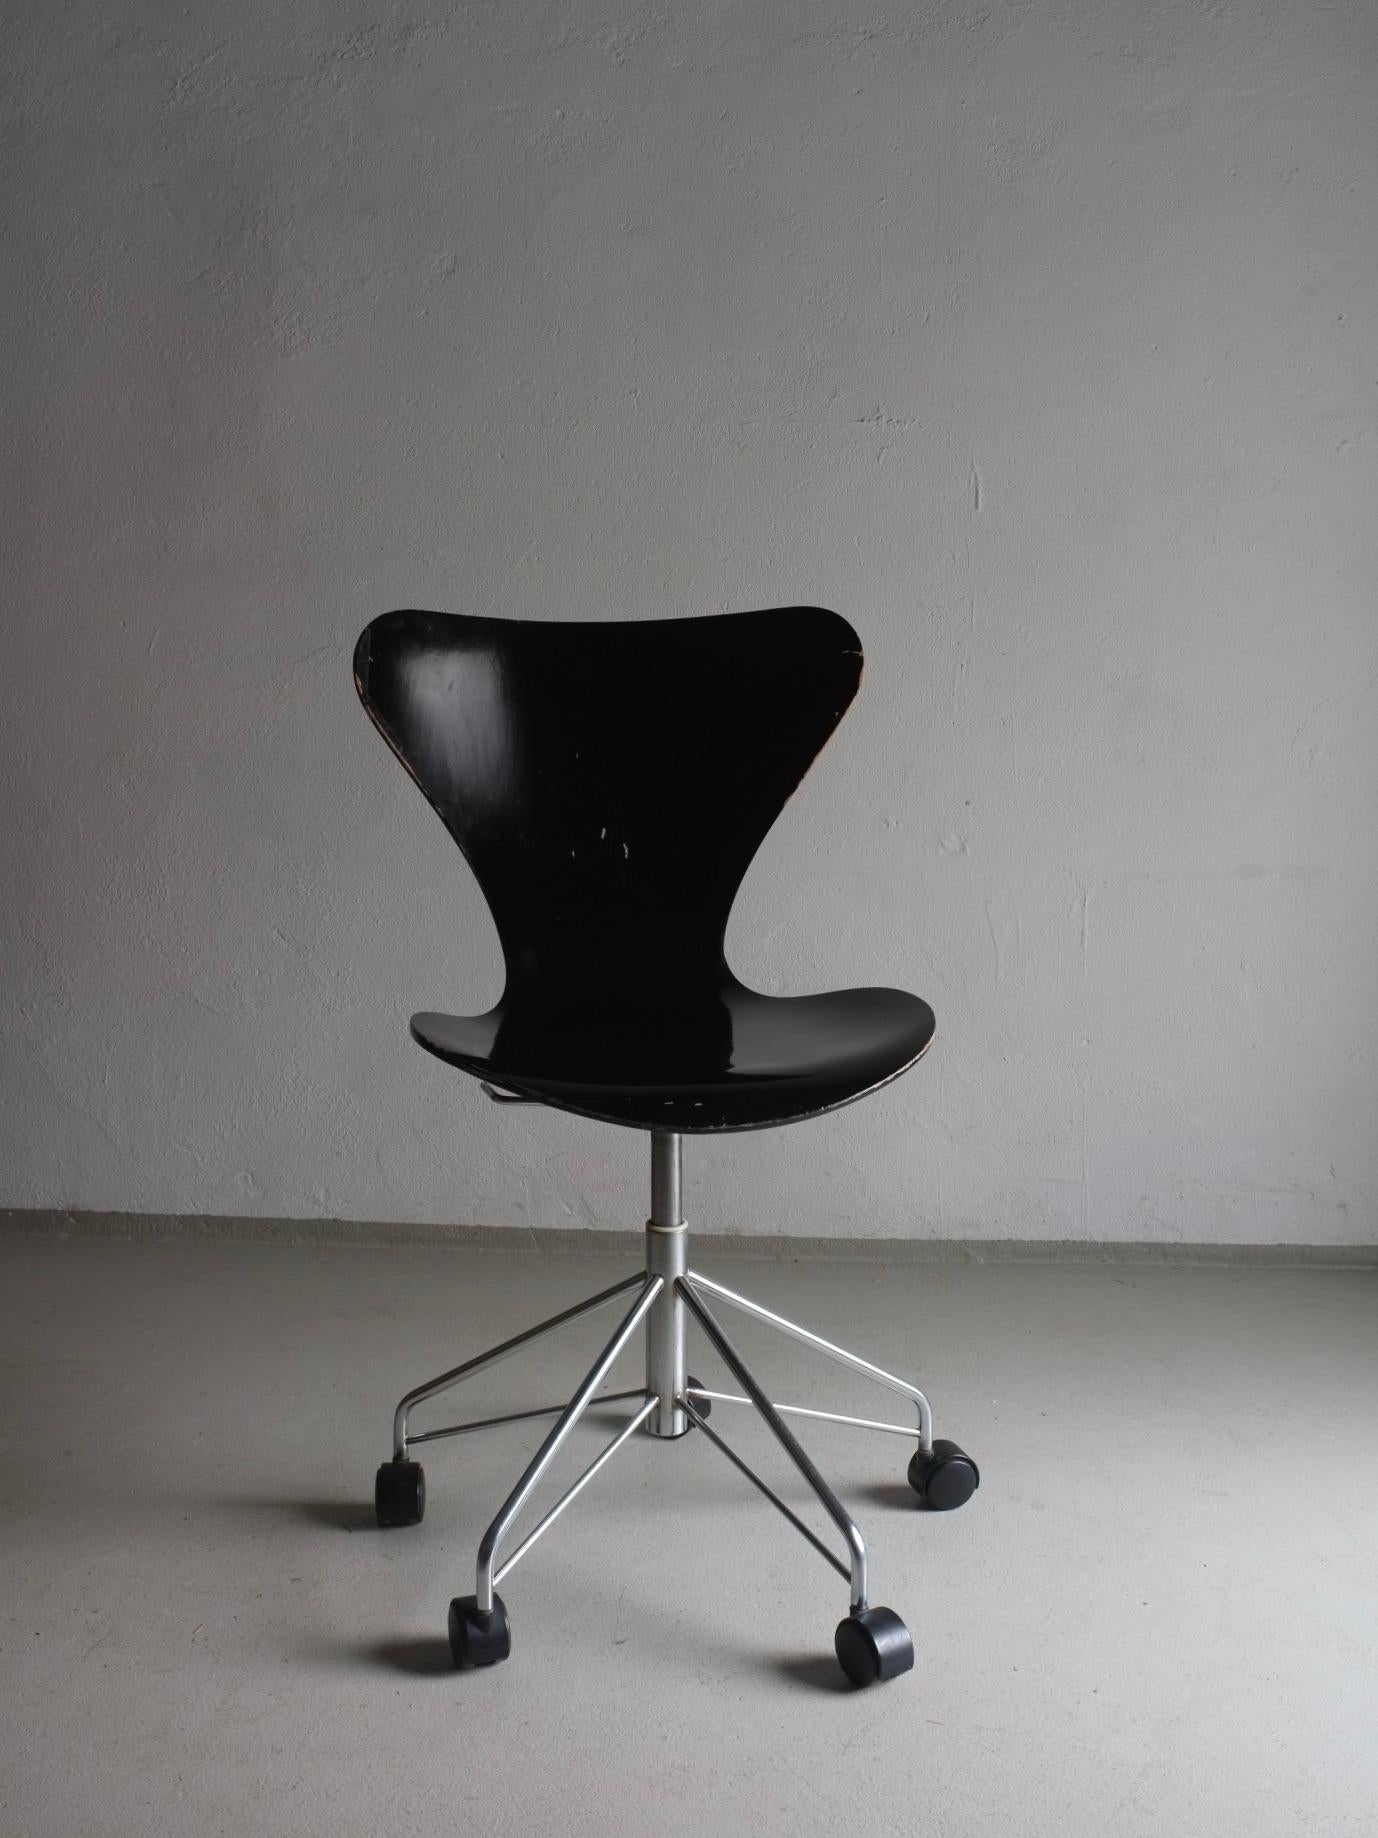 Schwarzer Vintage-Drehstuhl mit verstellbarem Sitz, Modell 3117, entworfen von Arne Jacobsen für Fritz Hansen in den 1950er Jahren. Einige Stühle haben Aufkleber, die den Produktionszeitraum bestätigen. Es sind 3 Stühle verfügbar.  
Abmessungen -